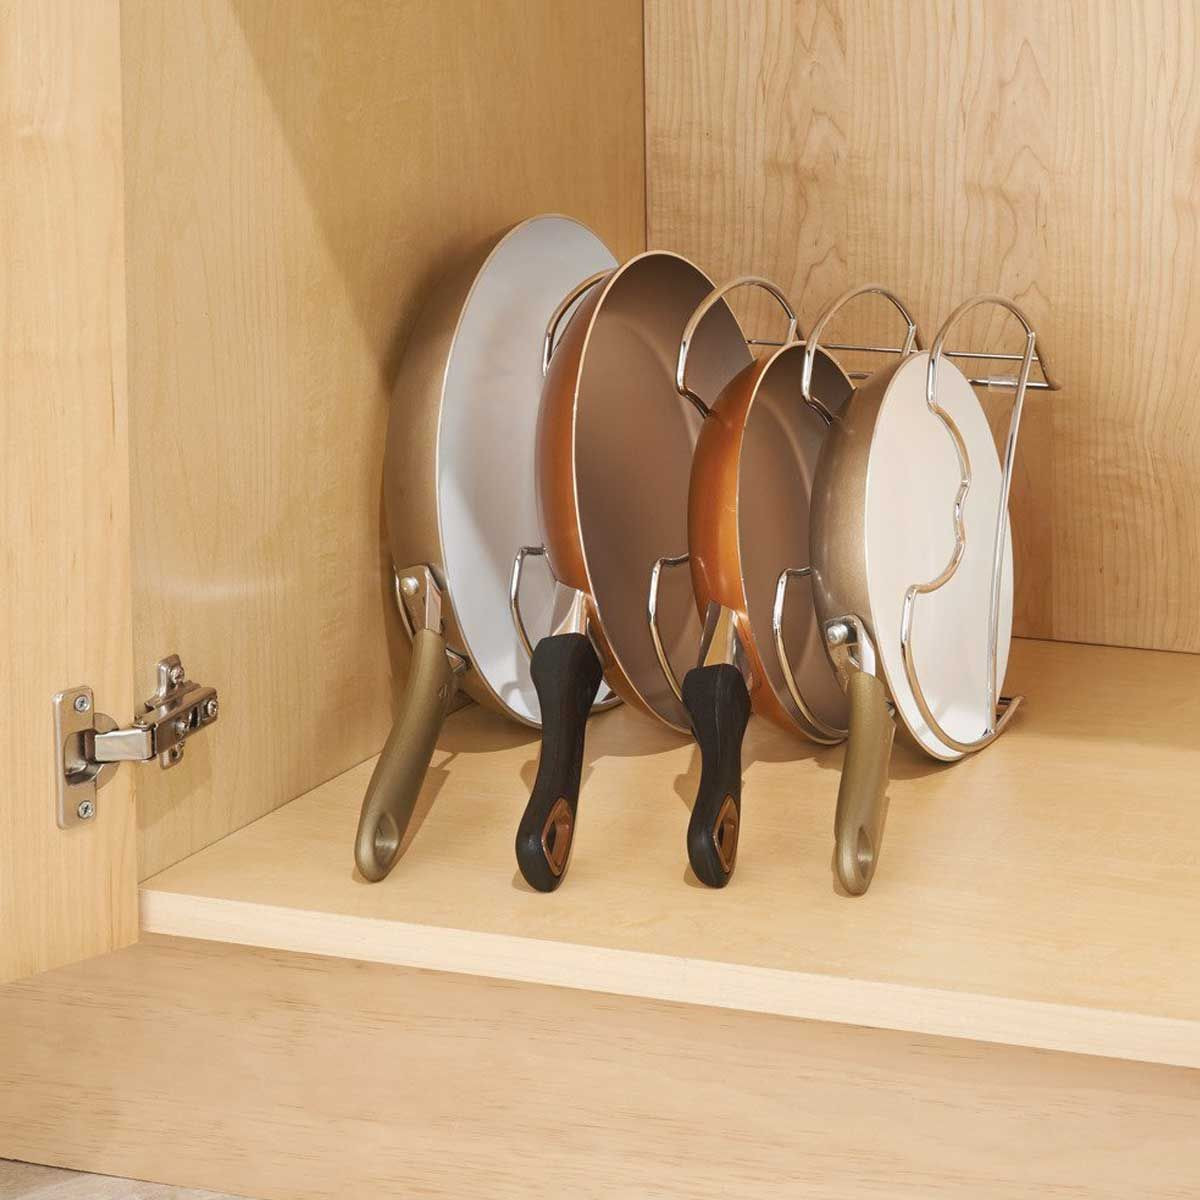 5 façons de ranger ses couvercles de casserole  Rangement poêles,  Rangement interieur cuisine, Rangement placard cuisine